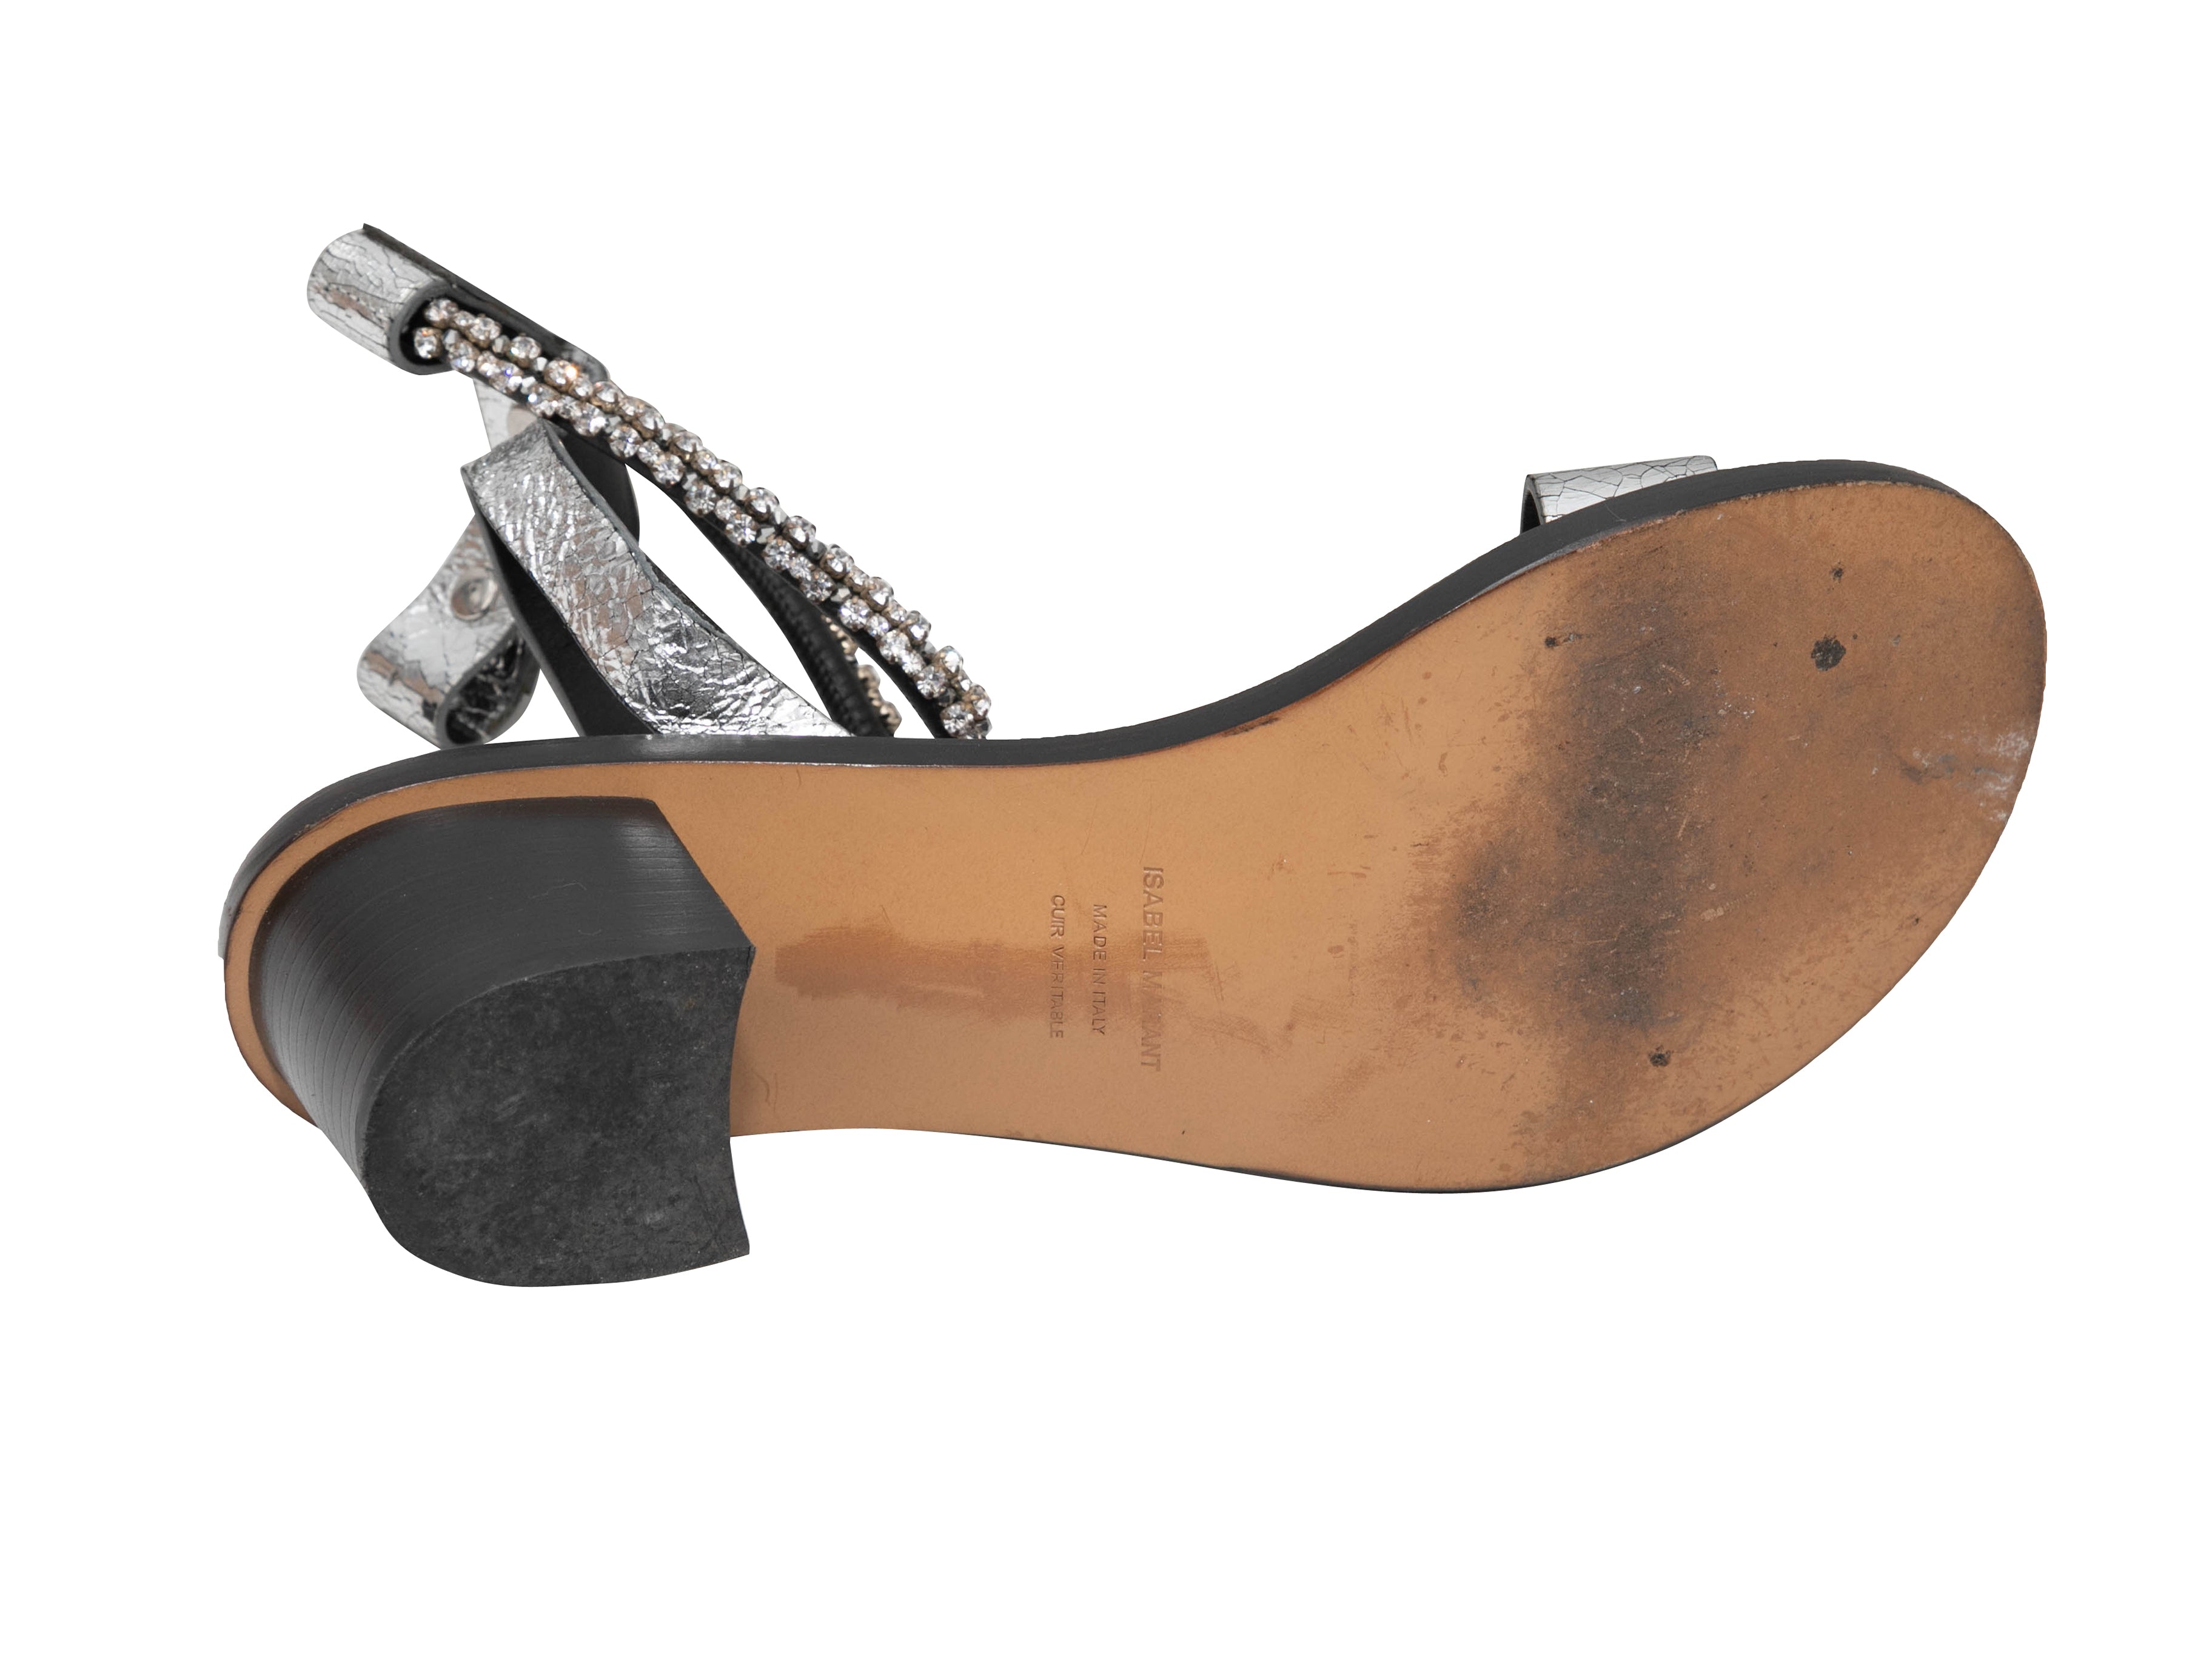 Silver & Black Jaeryn Crystal-Embellished Sandals Size 37